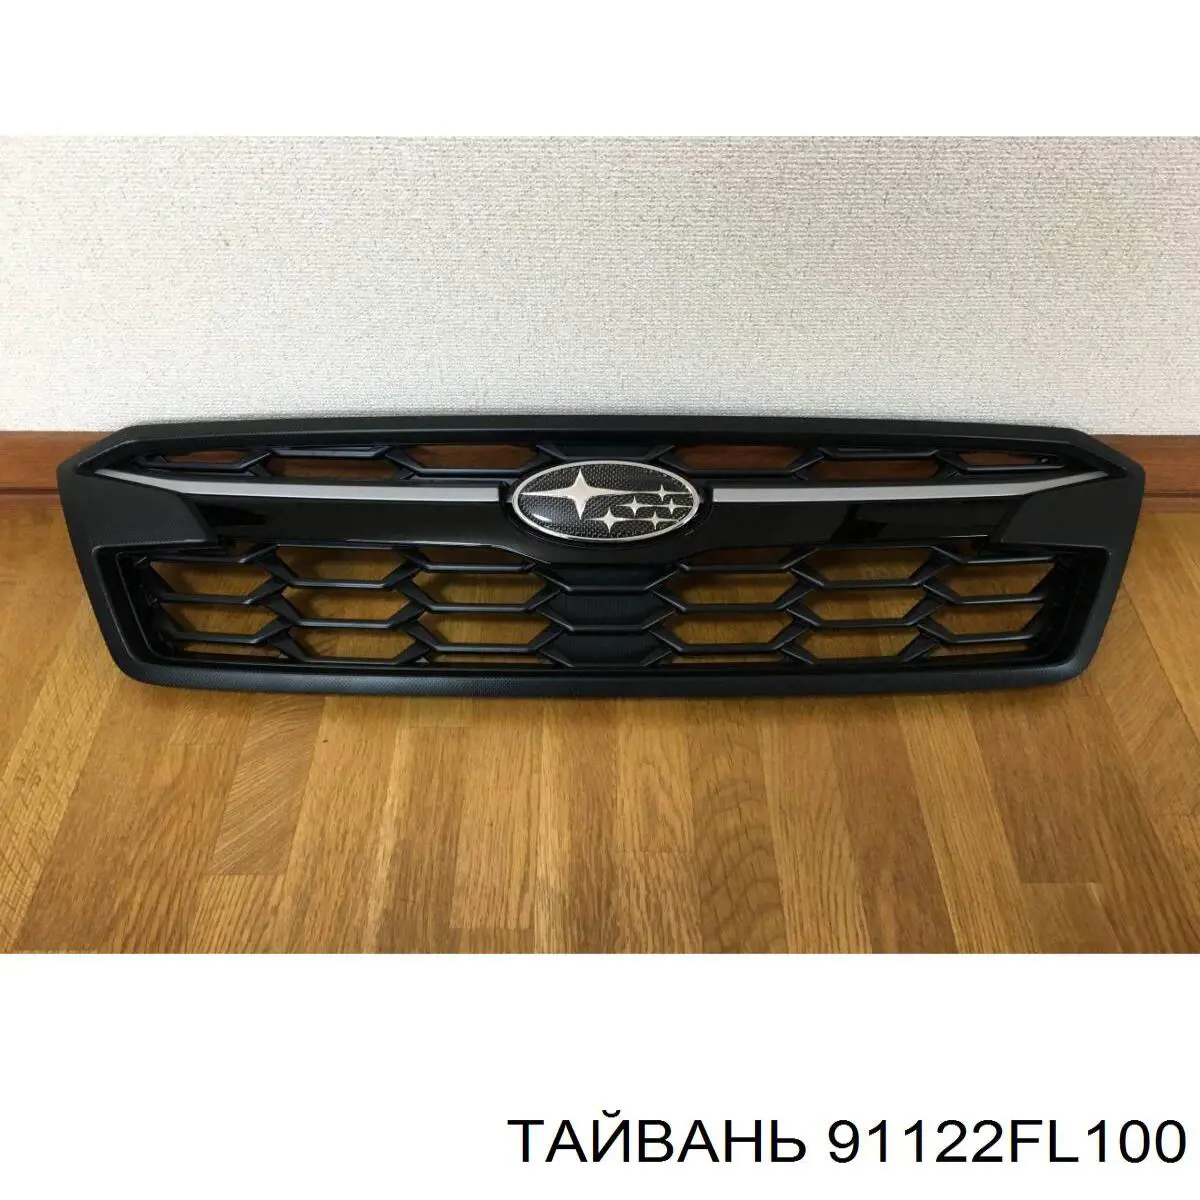 Решетка радиатора на Subaru XV GT (Субару ХВ)